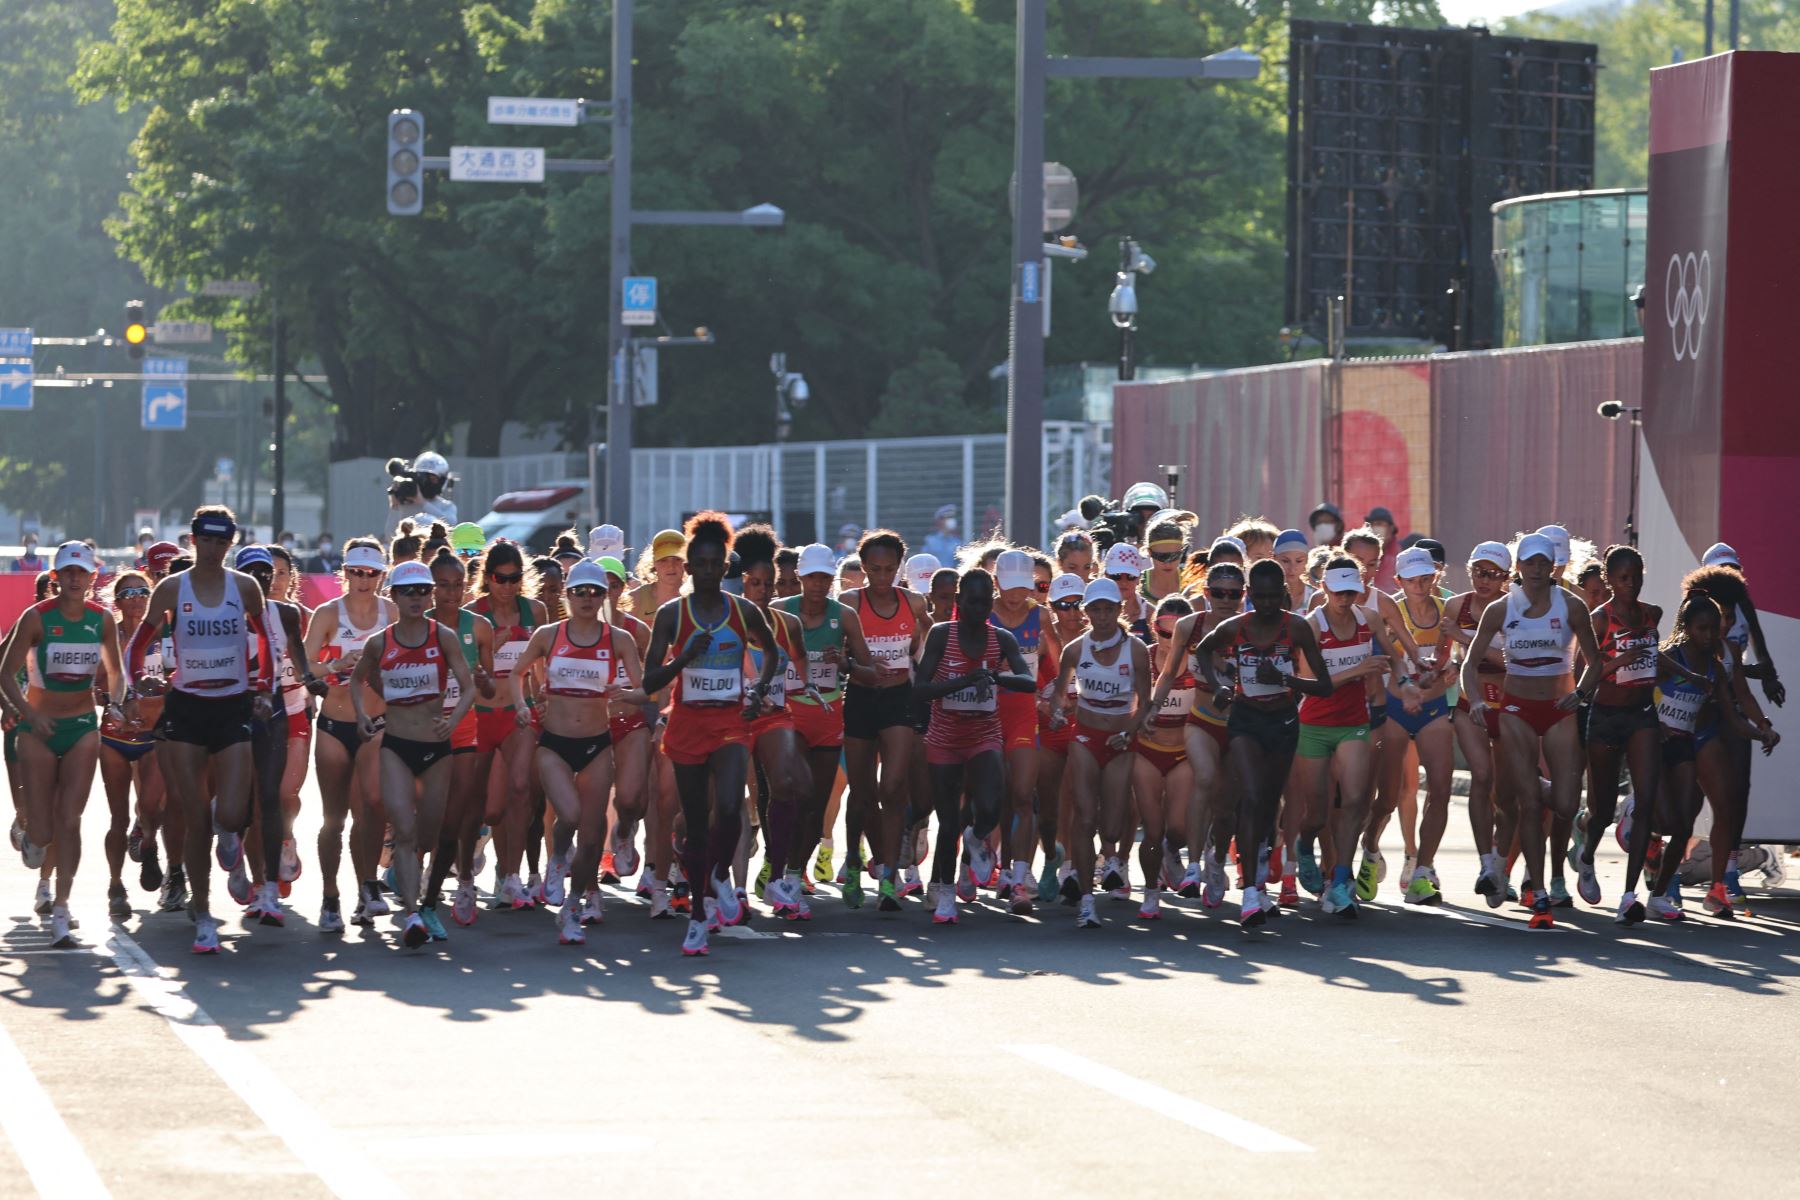 Las maratonistas compiten en la final del maratón femenino durante los Juegos Olímpicos de Tokio 2020 en Sapporo.
Foto: AFP